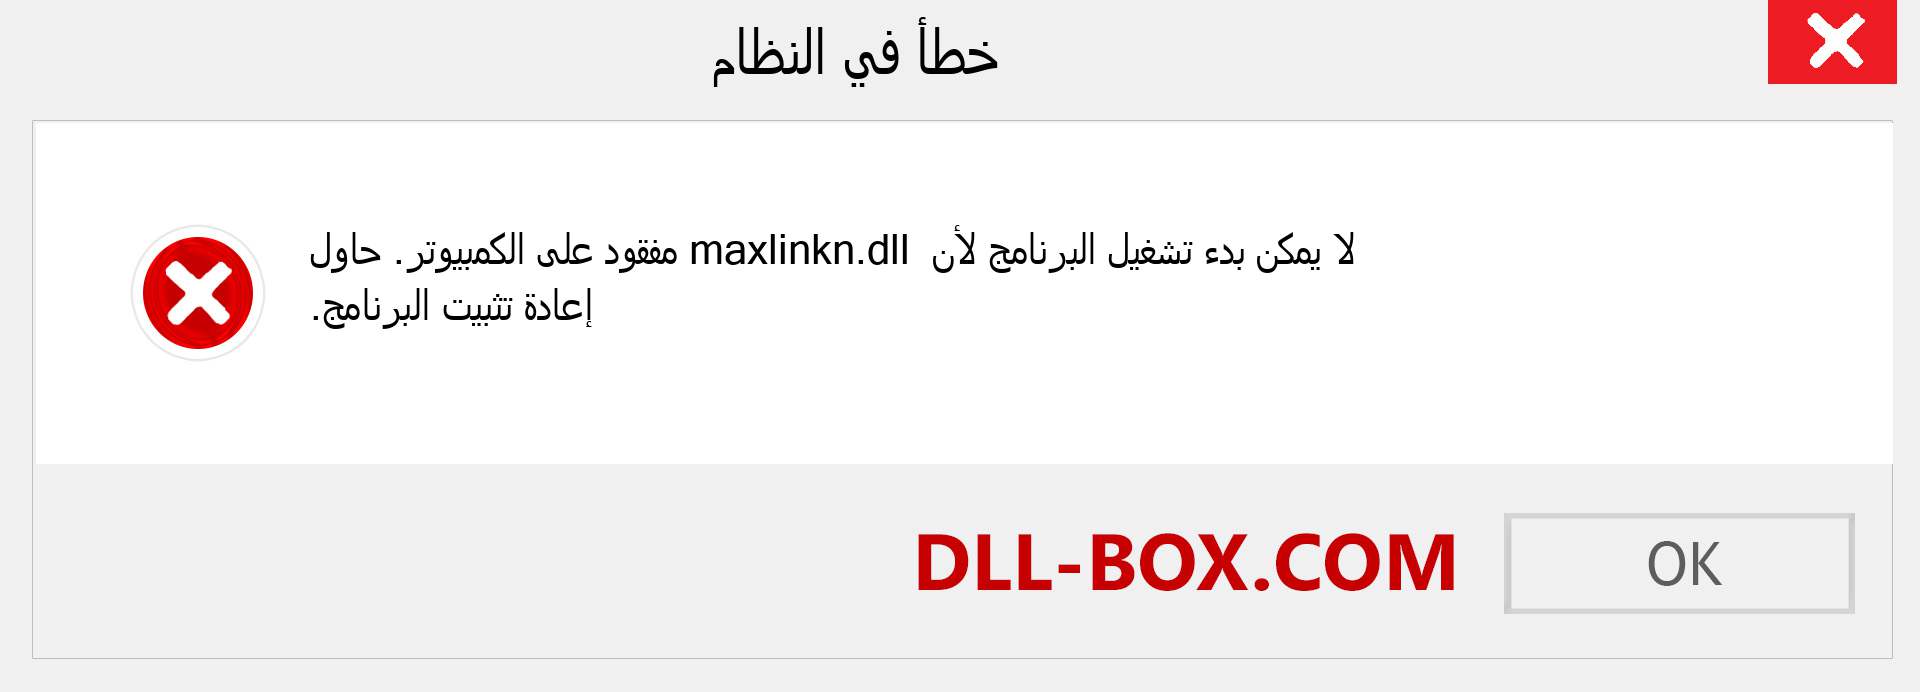 ملف maxlinkn.dll مفقود ؟. التنزيل لنظام التشغيل Windows 7 و 8 و 10 - إصلاح خطأ maxlinkn dll المفقود على Windows والصور والصور